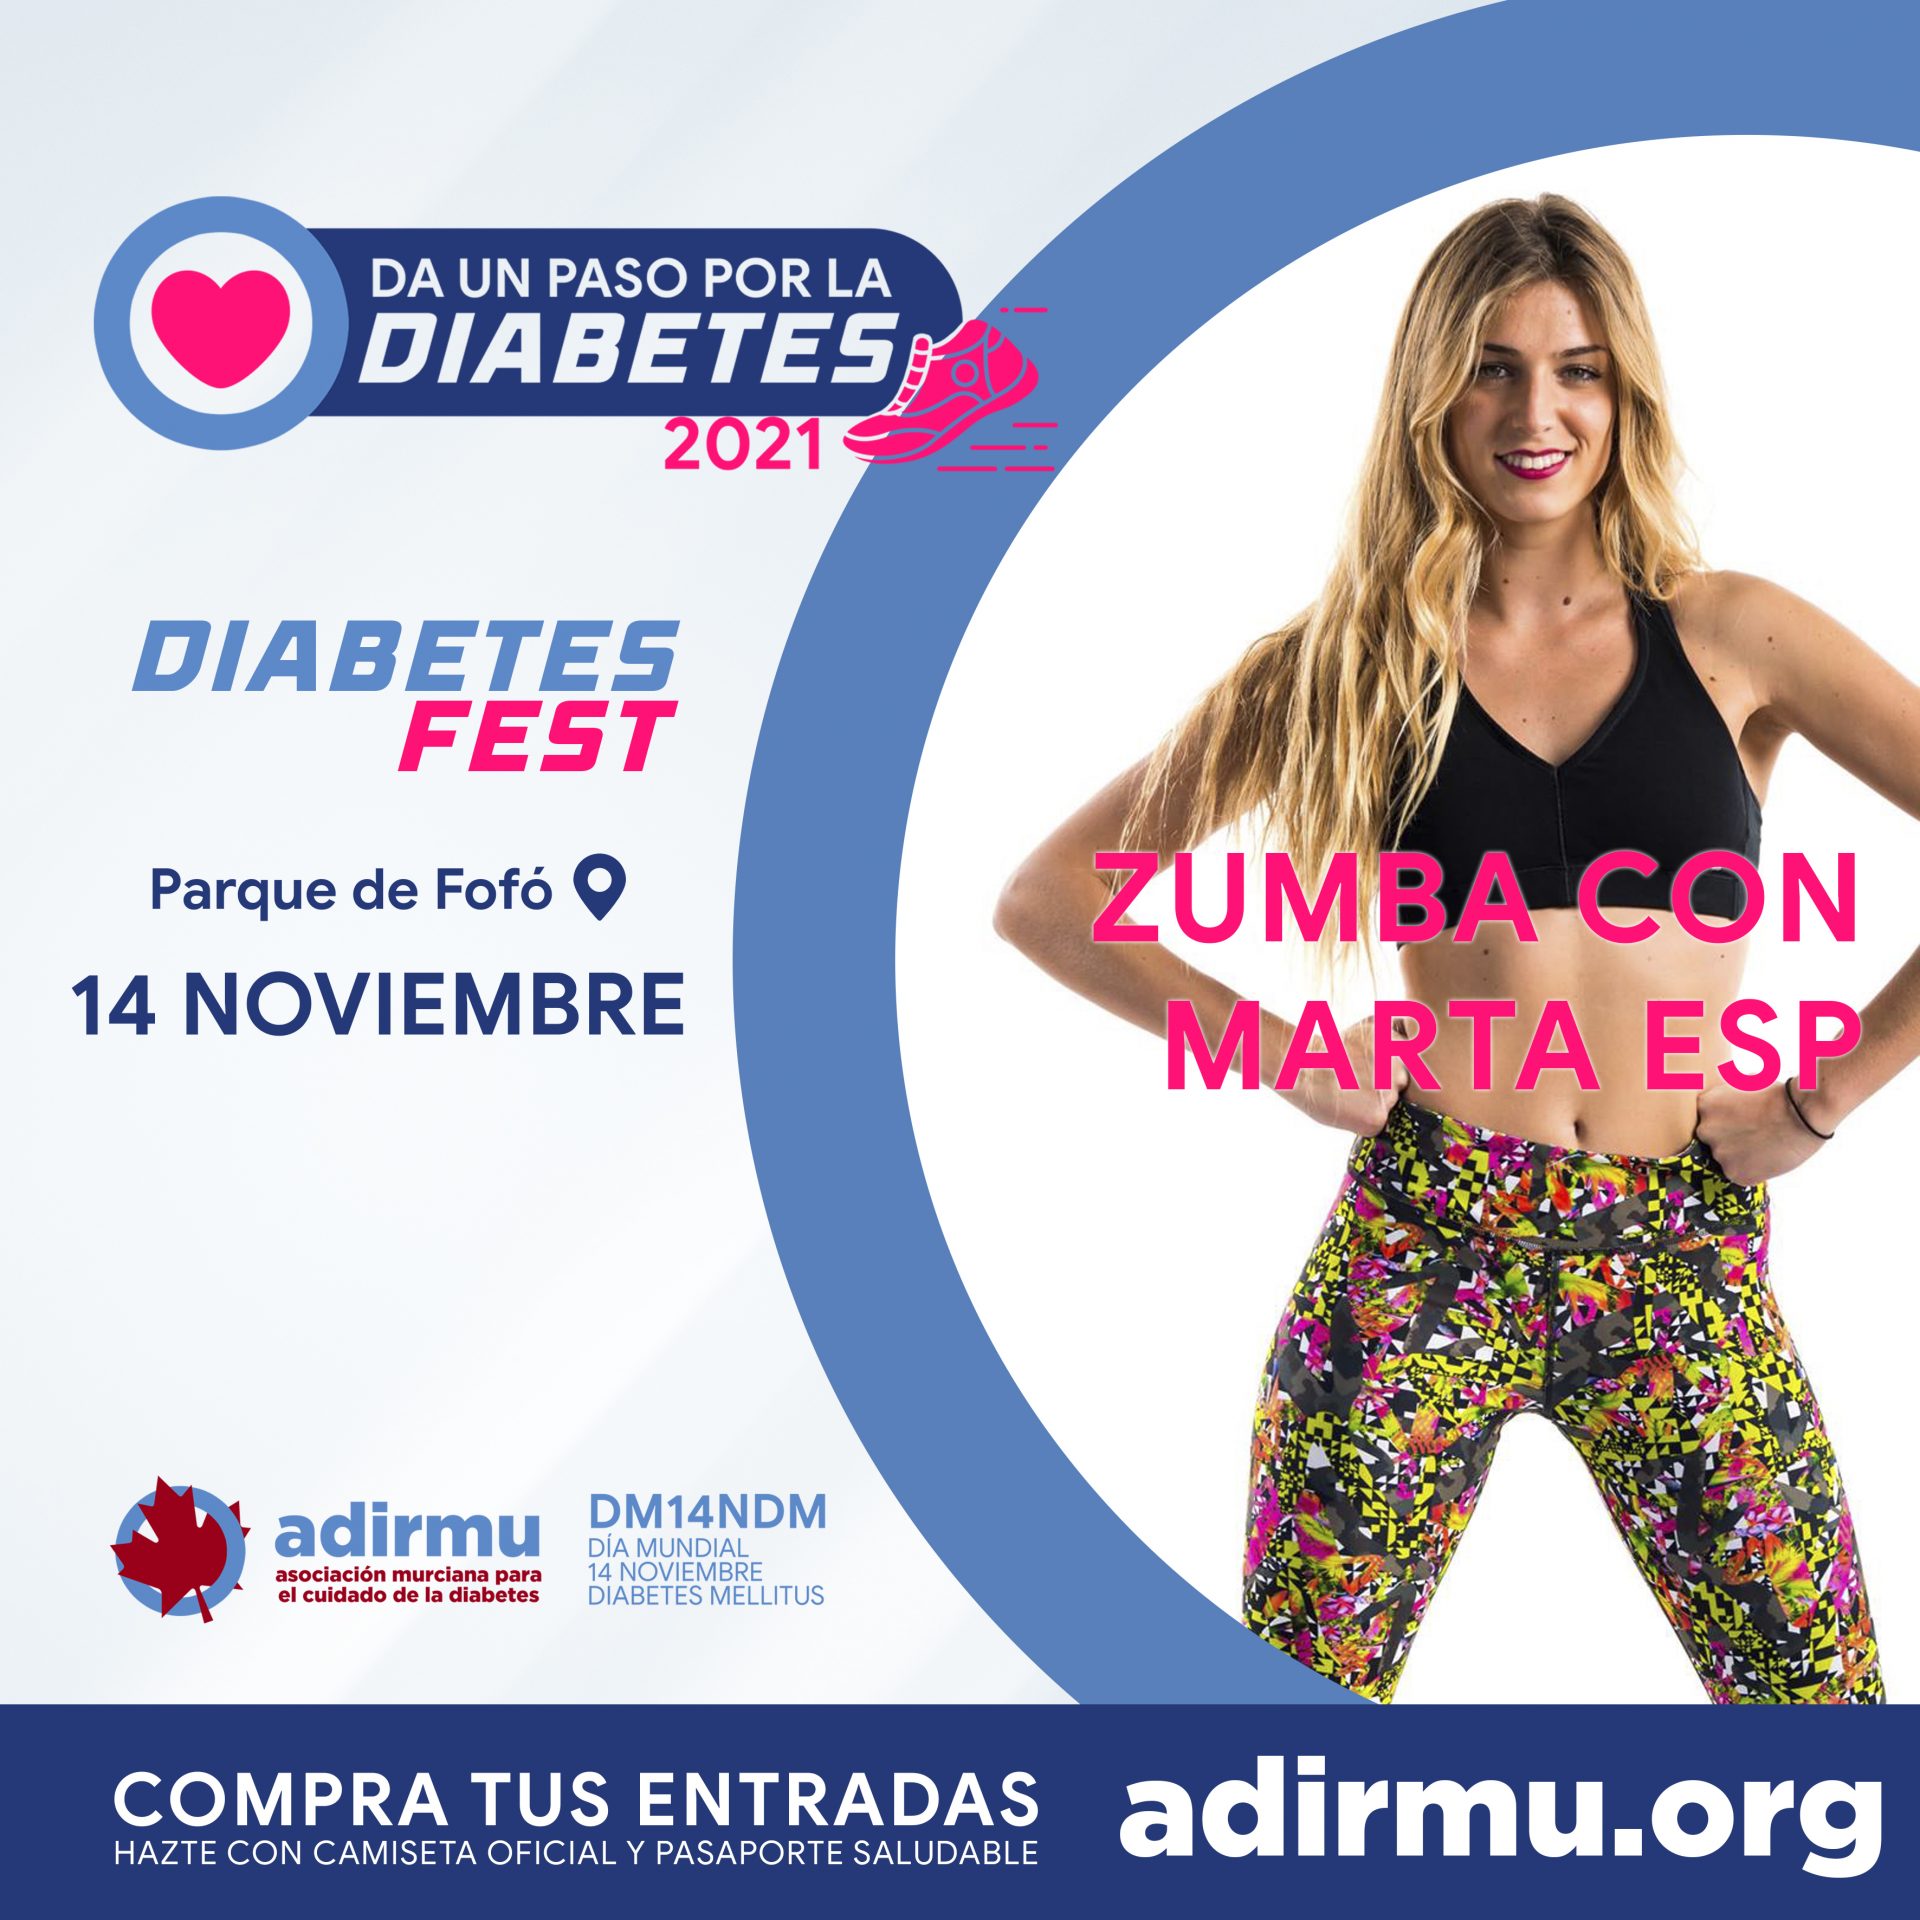 Diabetes Fest Zumba Marta Esp